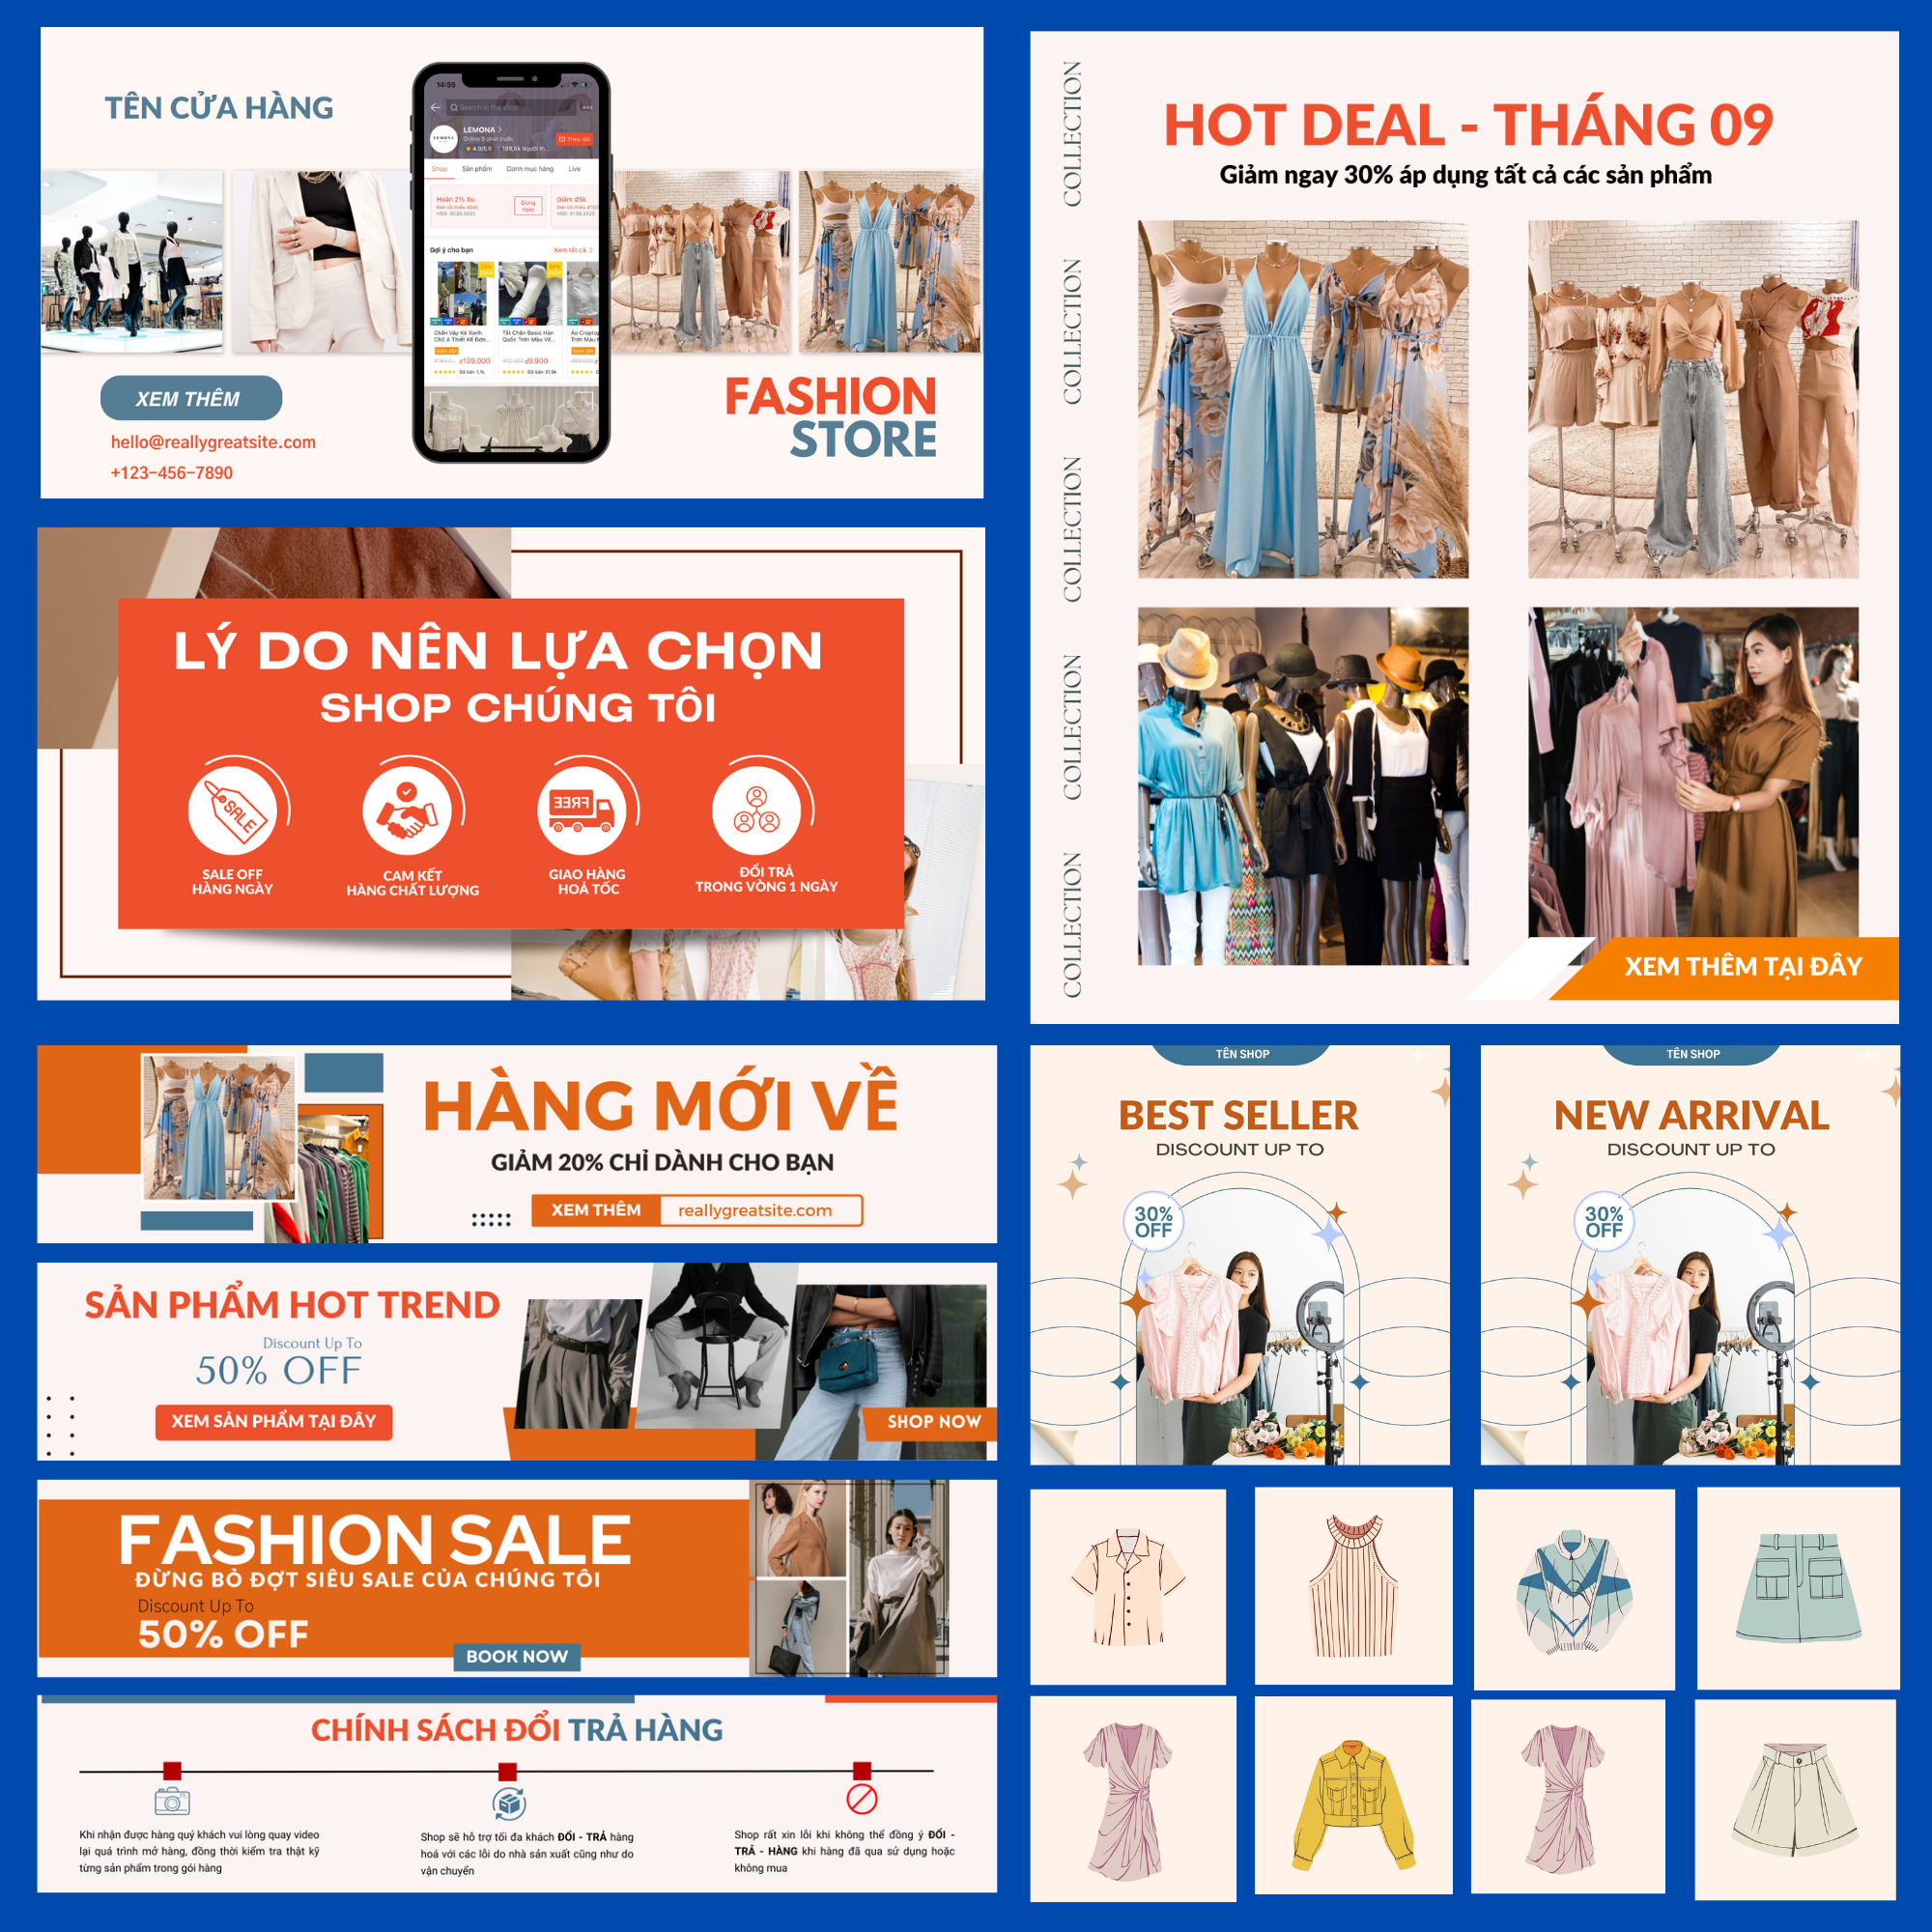 Shopee là một trong những trang web thương mại điện tử phổ biến ở Việt Nam. Để tạo được giao diện hoàn hảo cho cửa hàng trên Shopee, việc tùy chỉnh template là một trong những bước quan trọng.